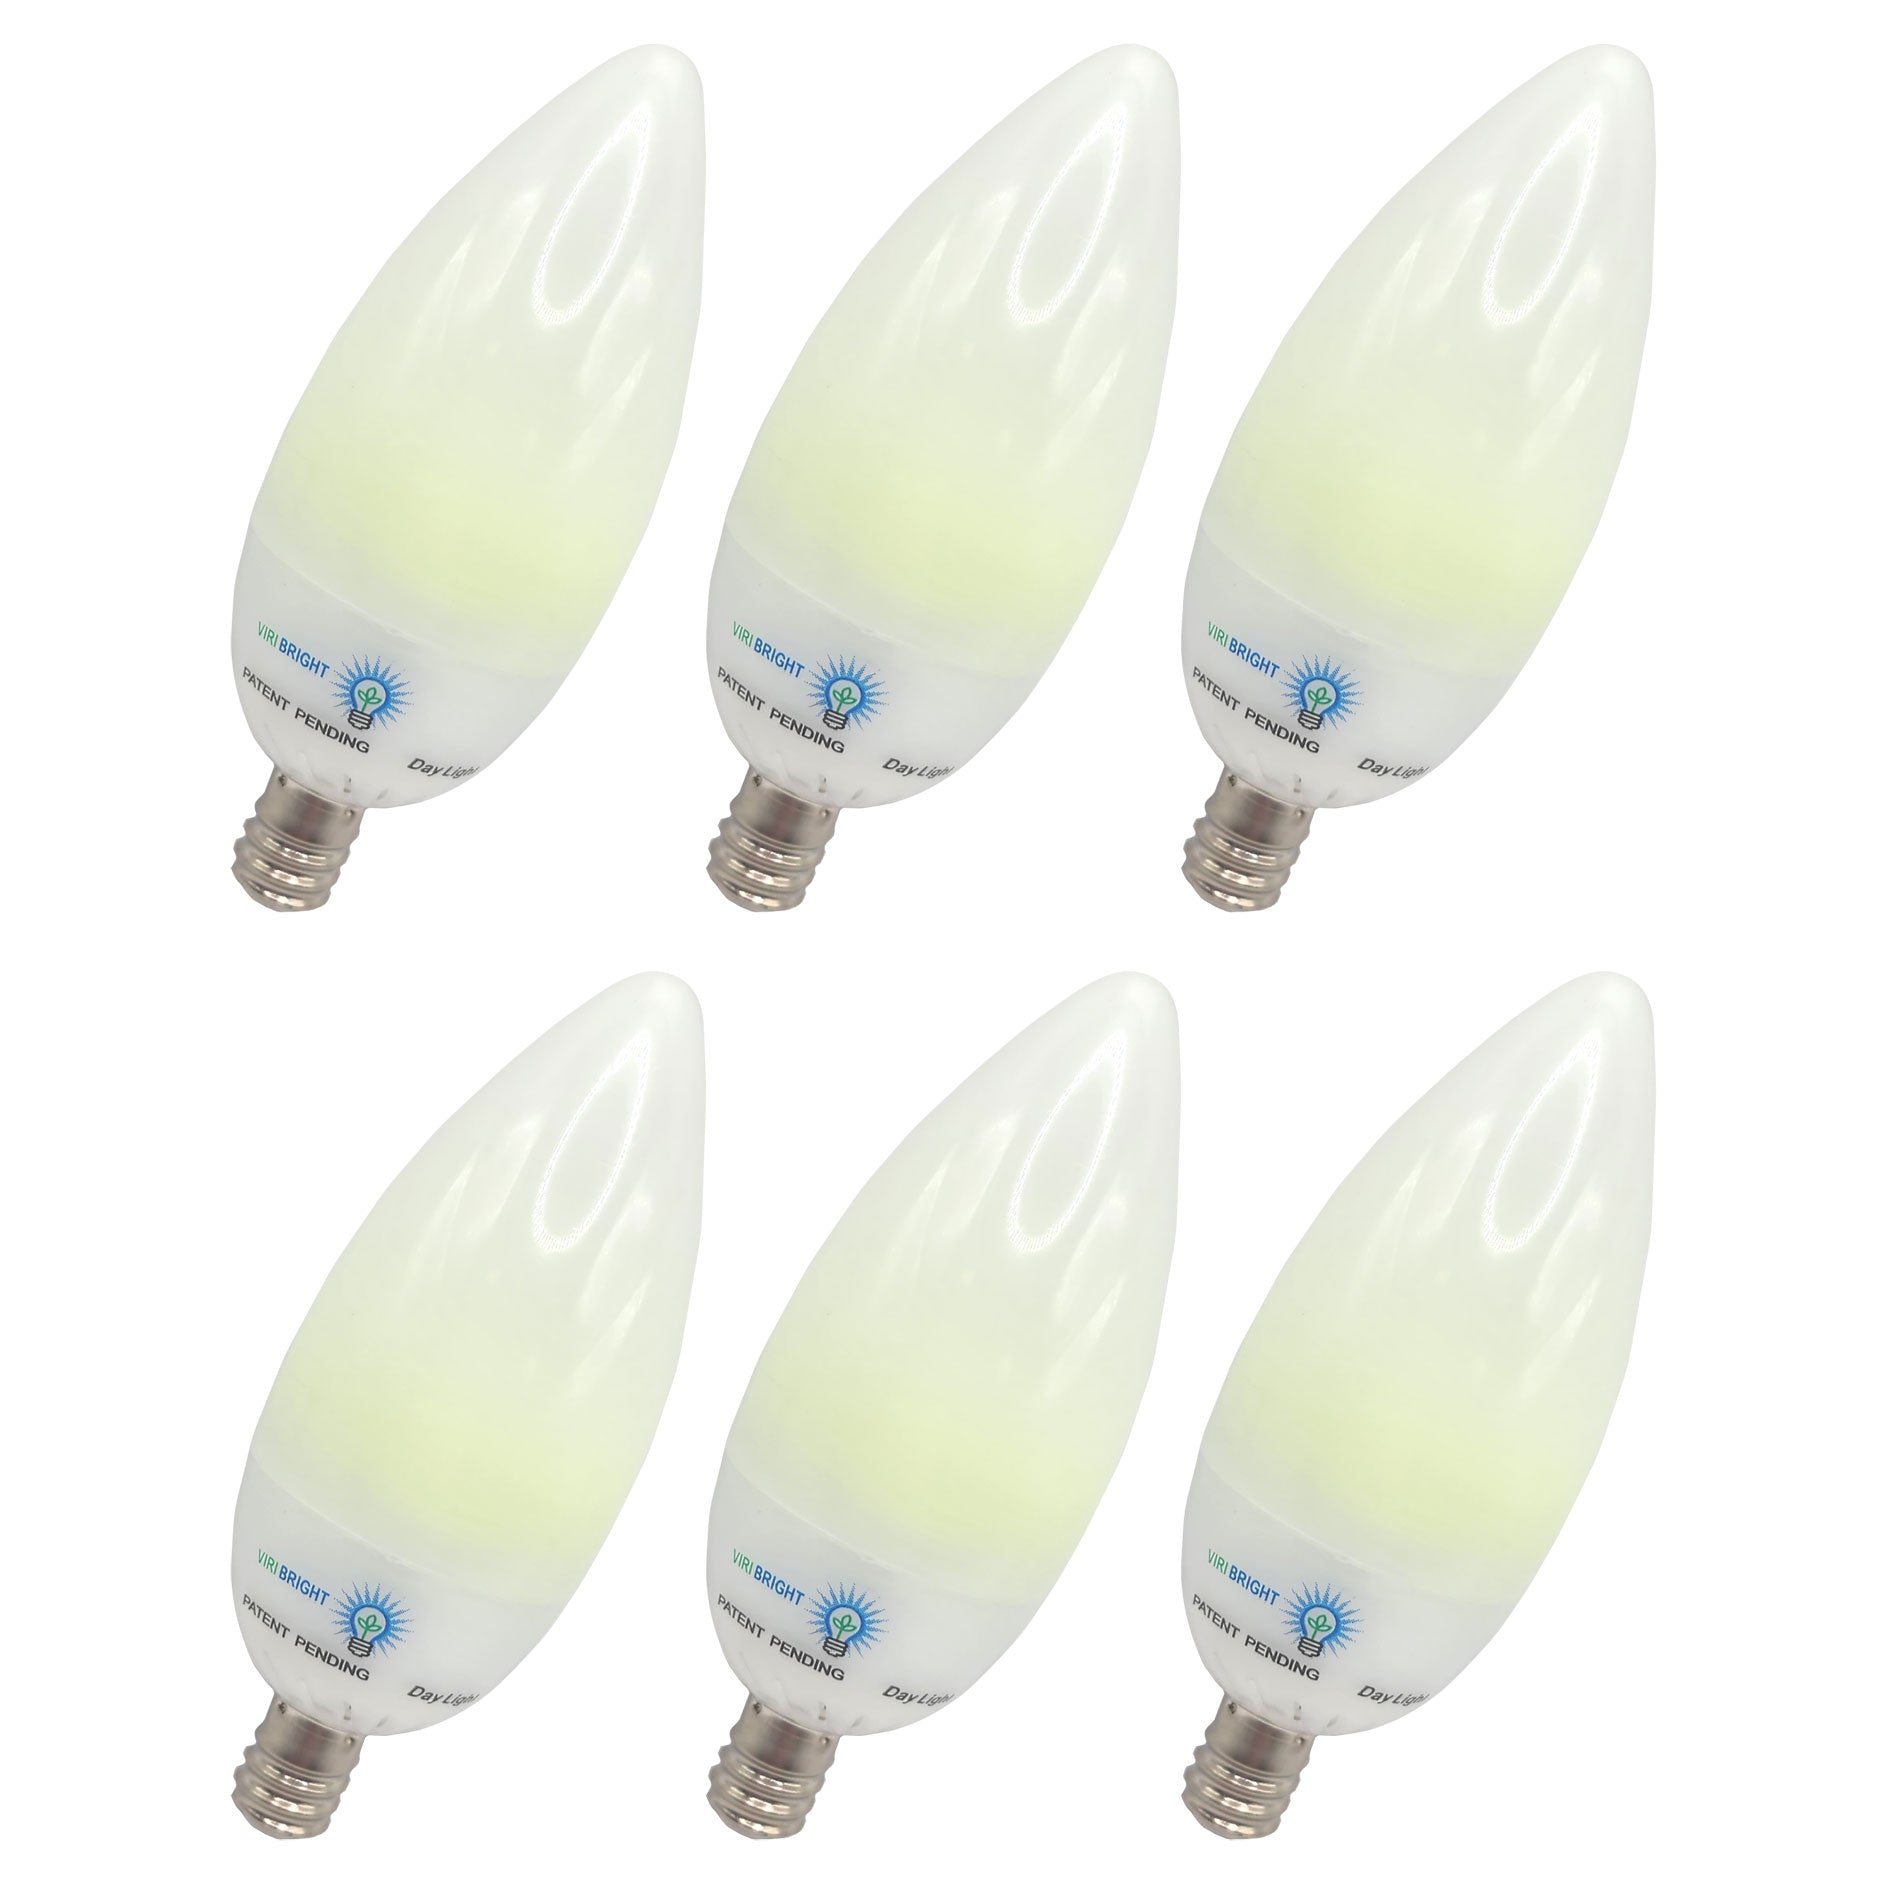 Chandelier Candelabra 22-Watt Equivalent B11 E12 LED Frosted LED Light Bulbs